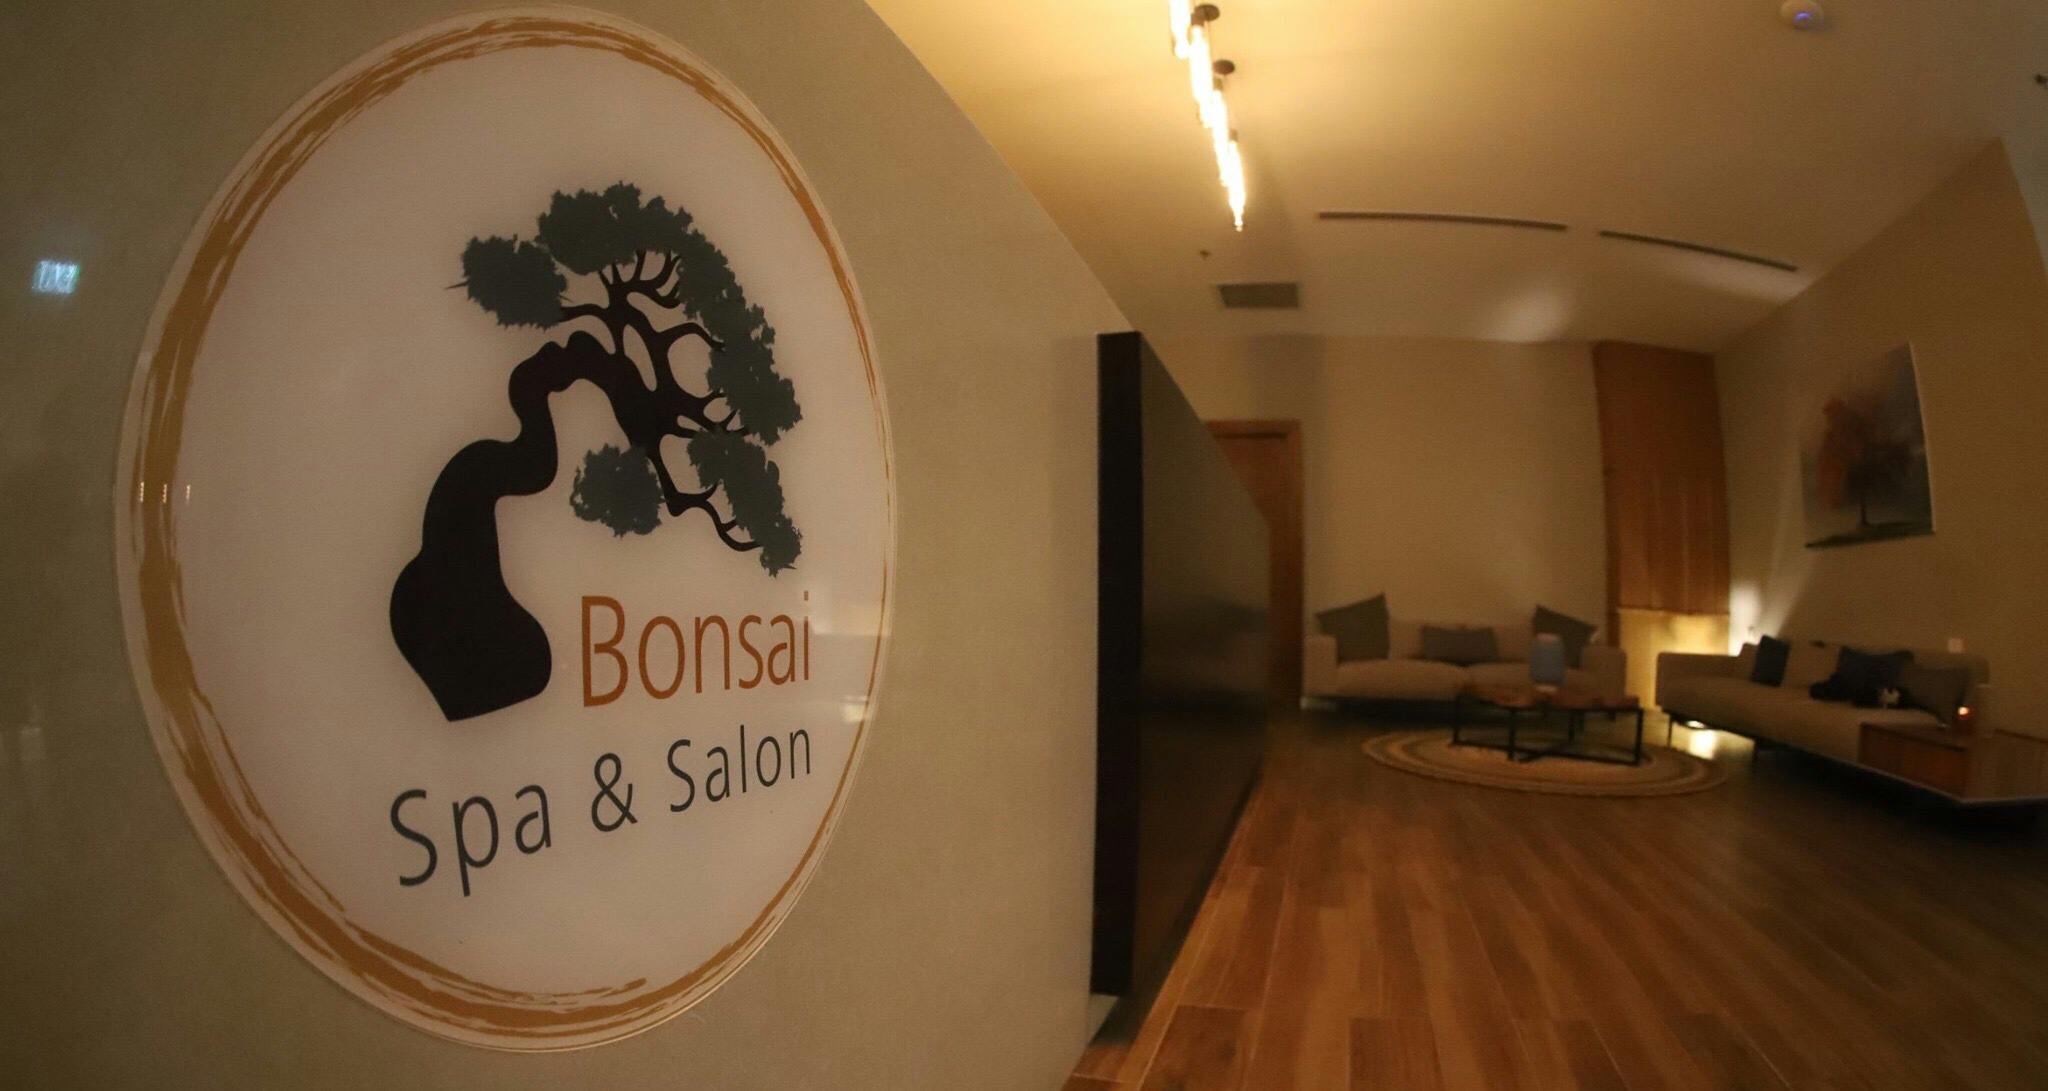 Bonsai Spa & Salon cover image